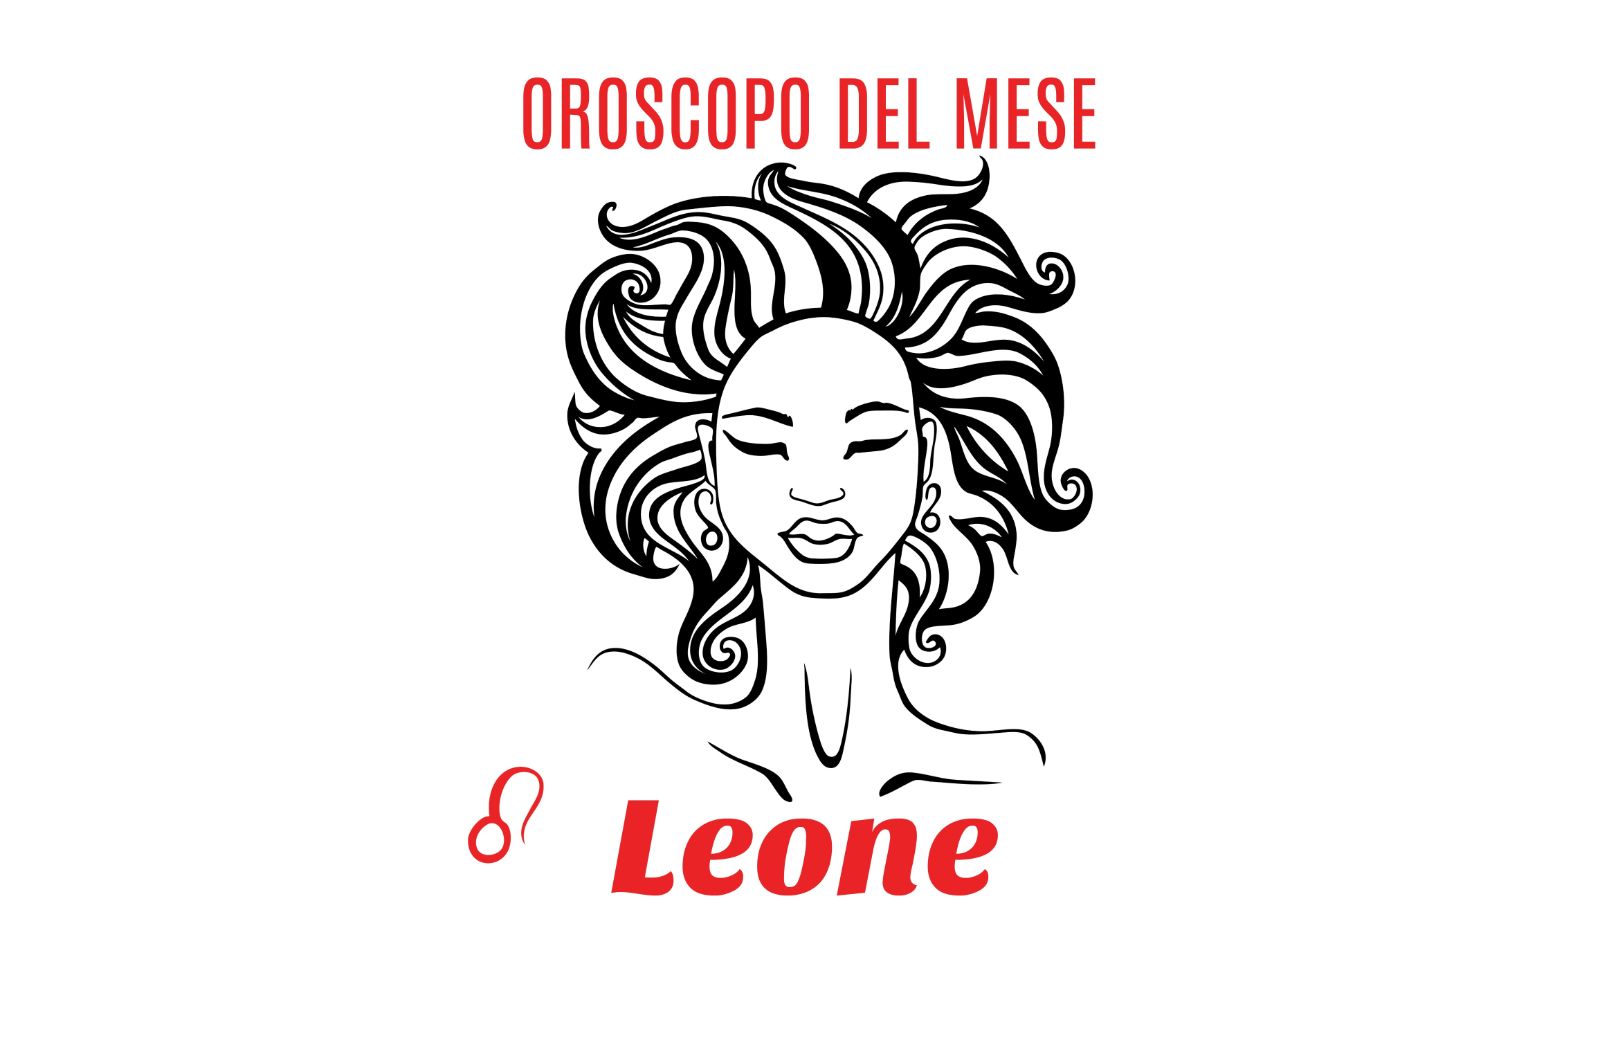 Oroscopo del mese: Leone - gennaio 2019